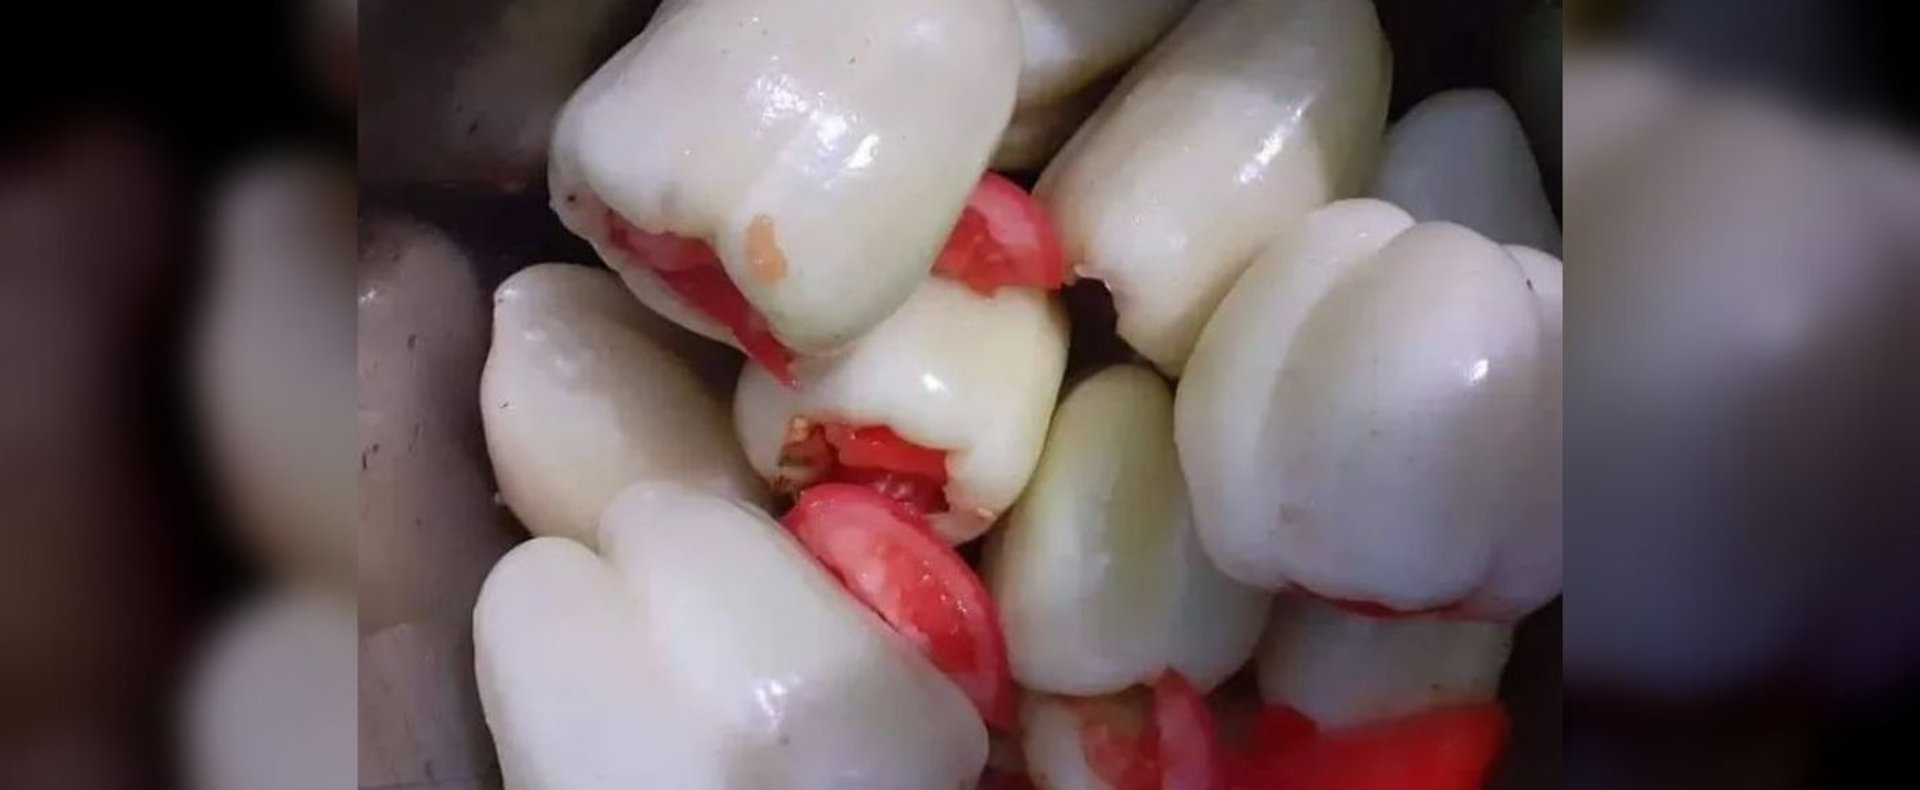 Warzywo, które wygląda jak ząb